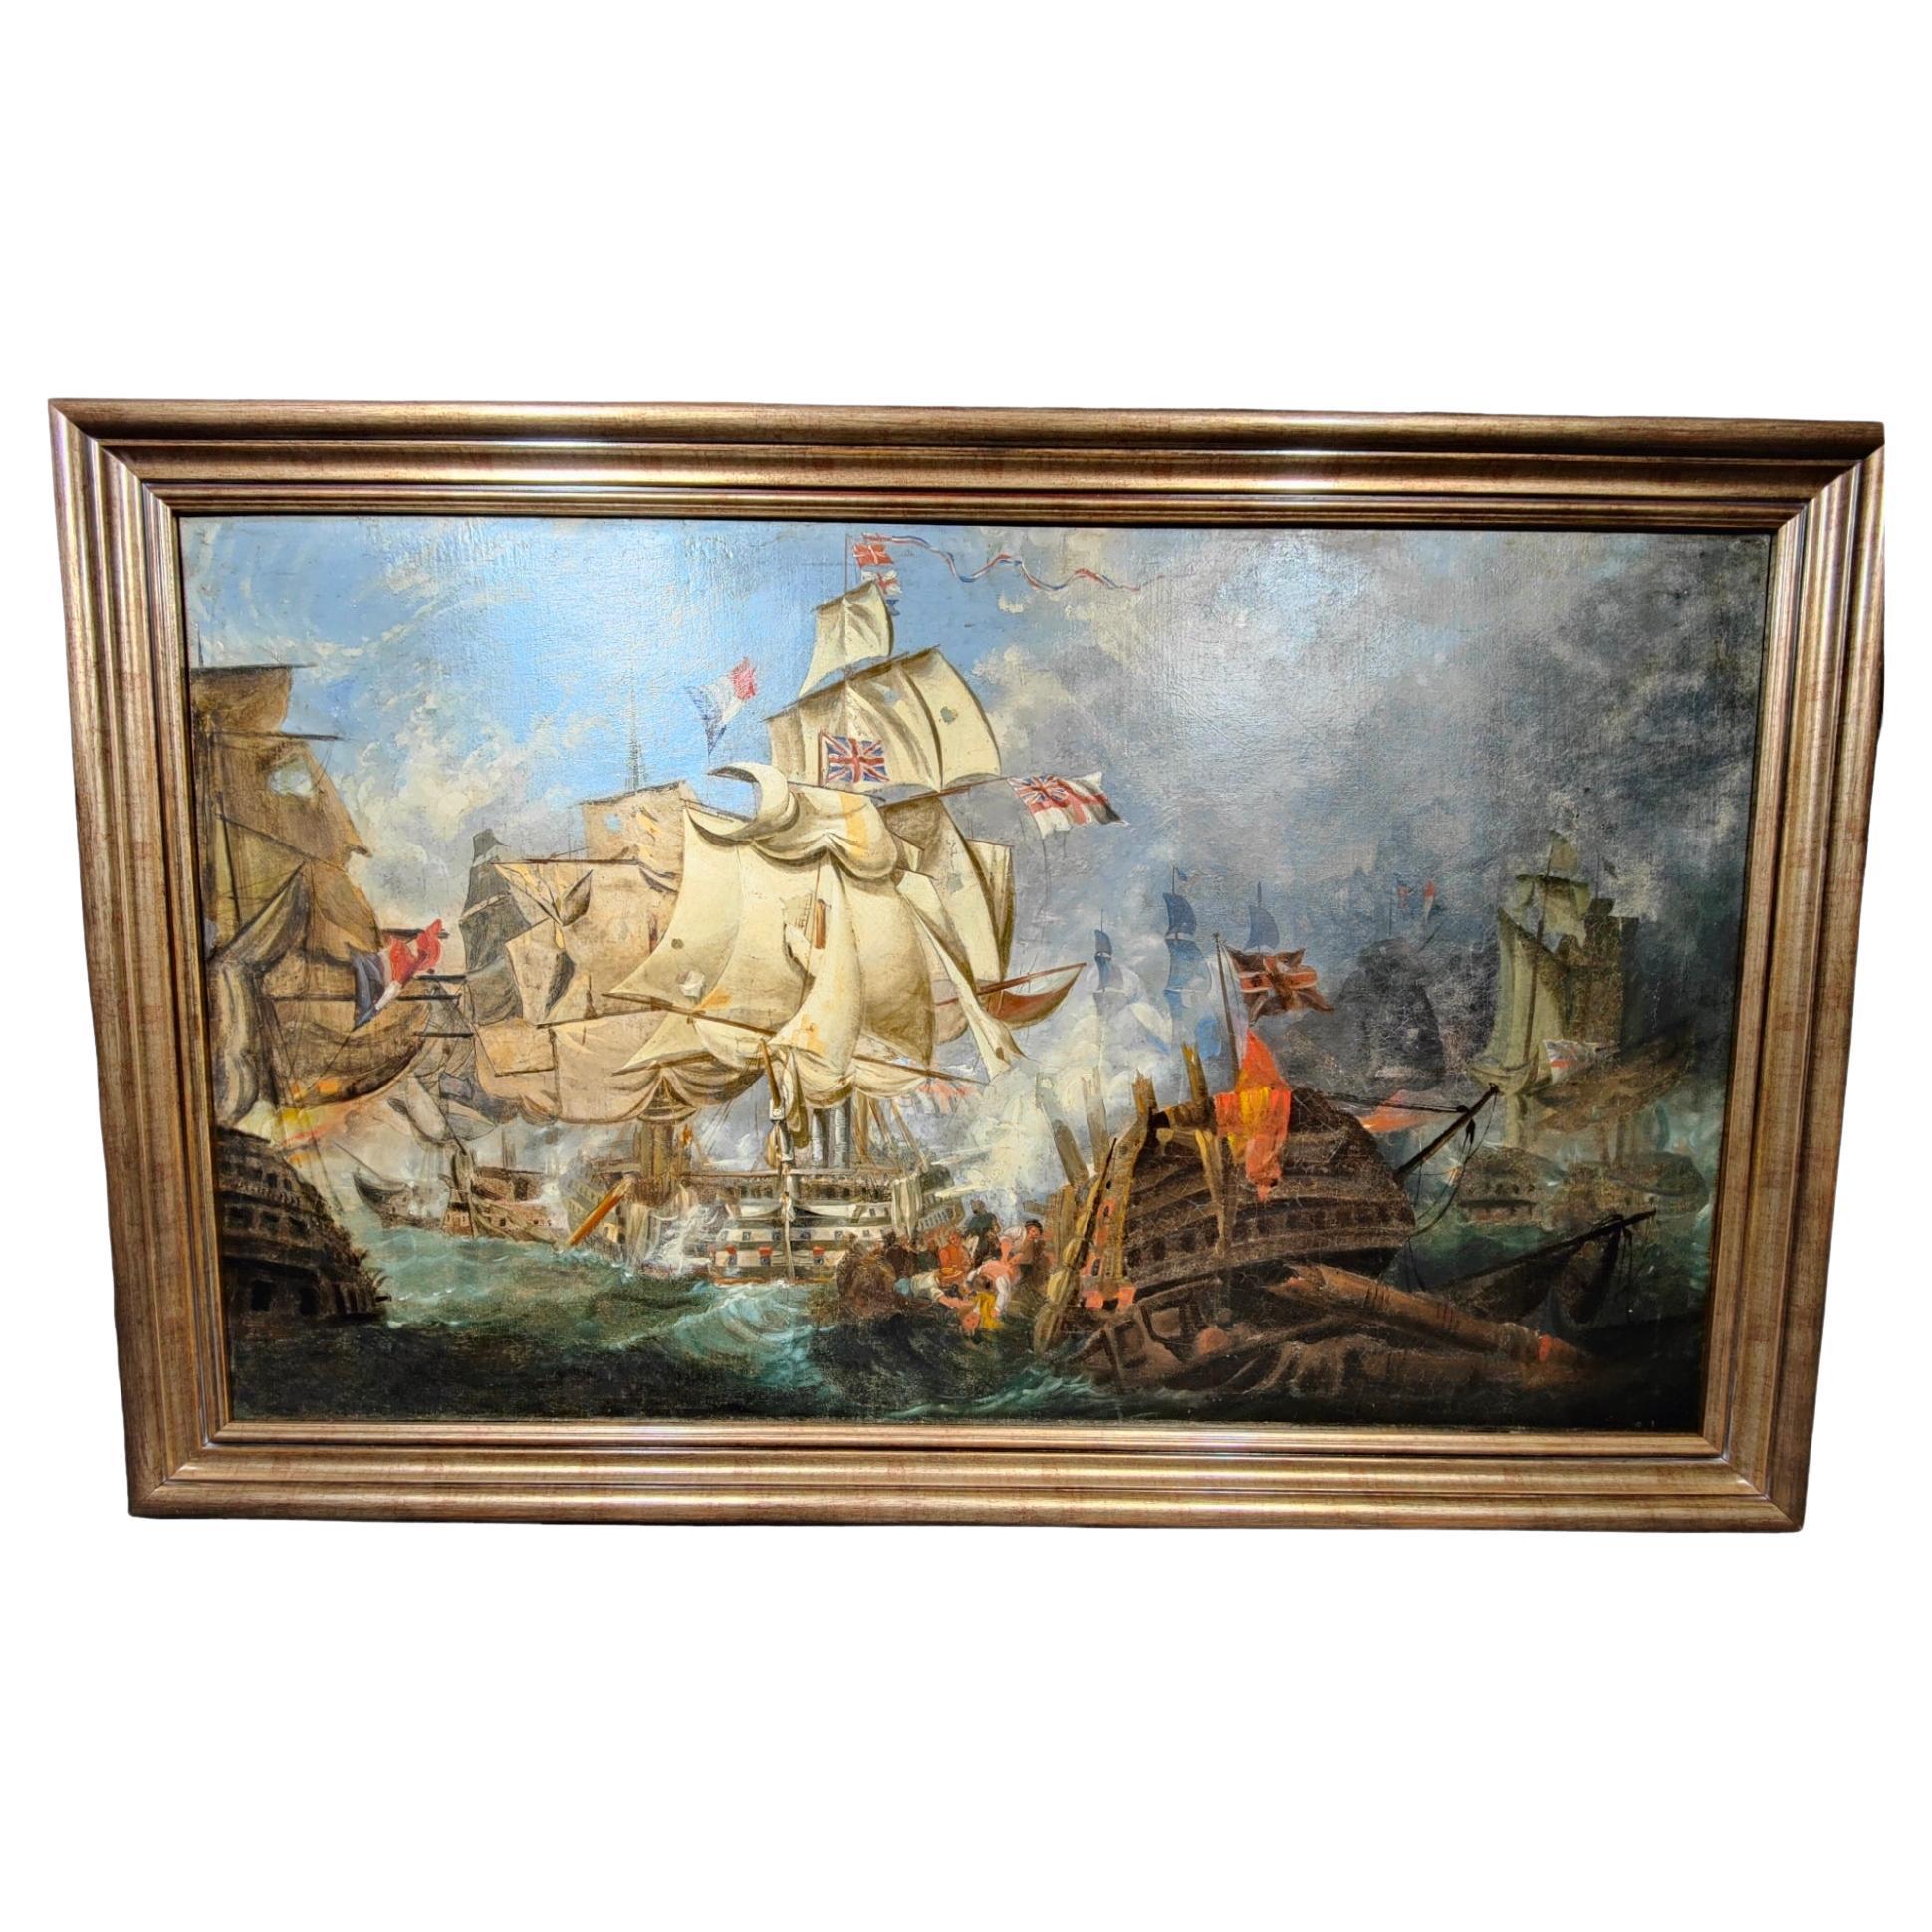 Huile sur toile avec la bataille de Trafalgar 18ème siècle